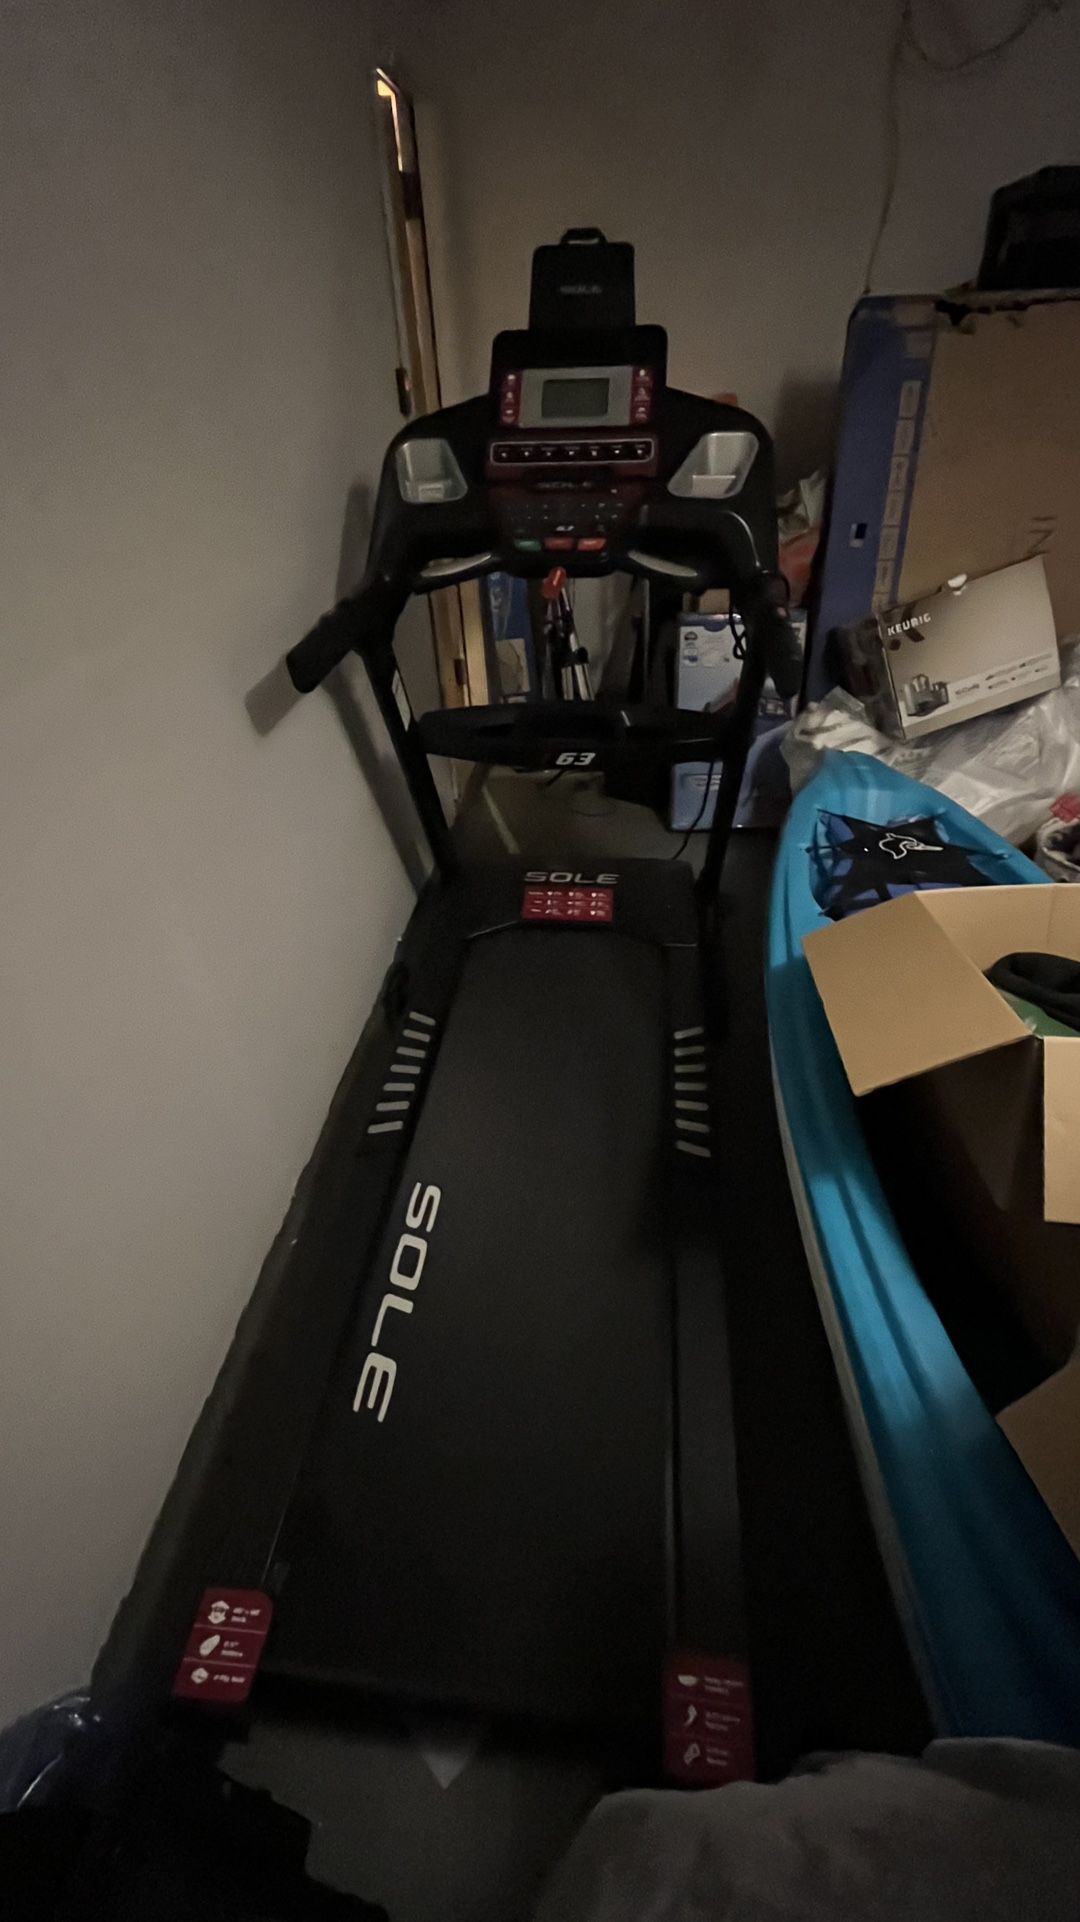 Sole F63 Treadmill -  Near perfect condition ! 